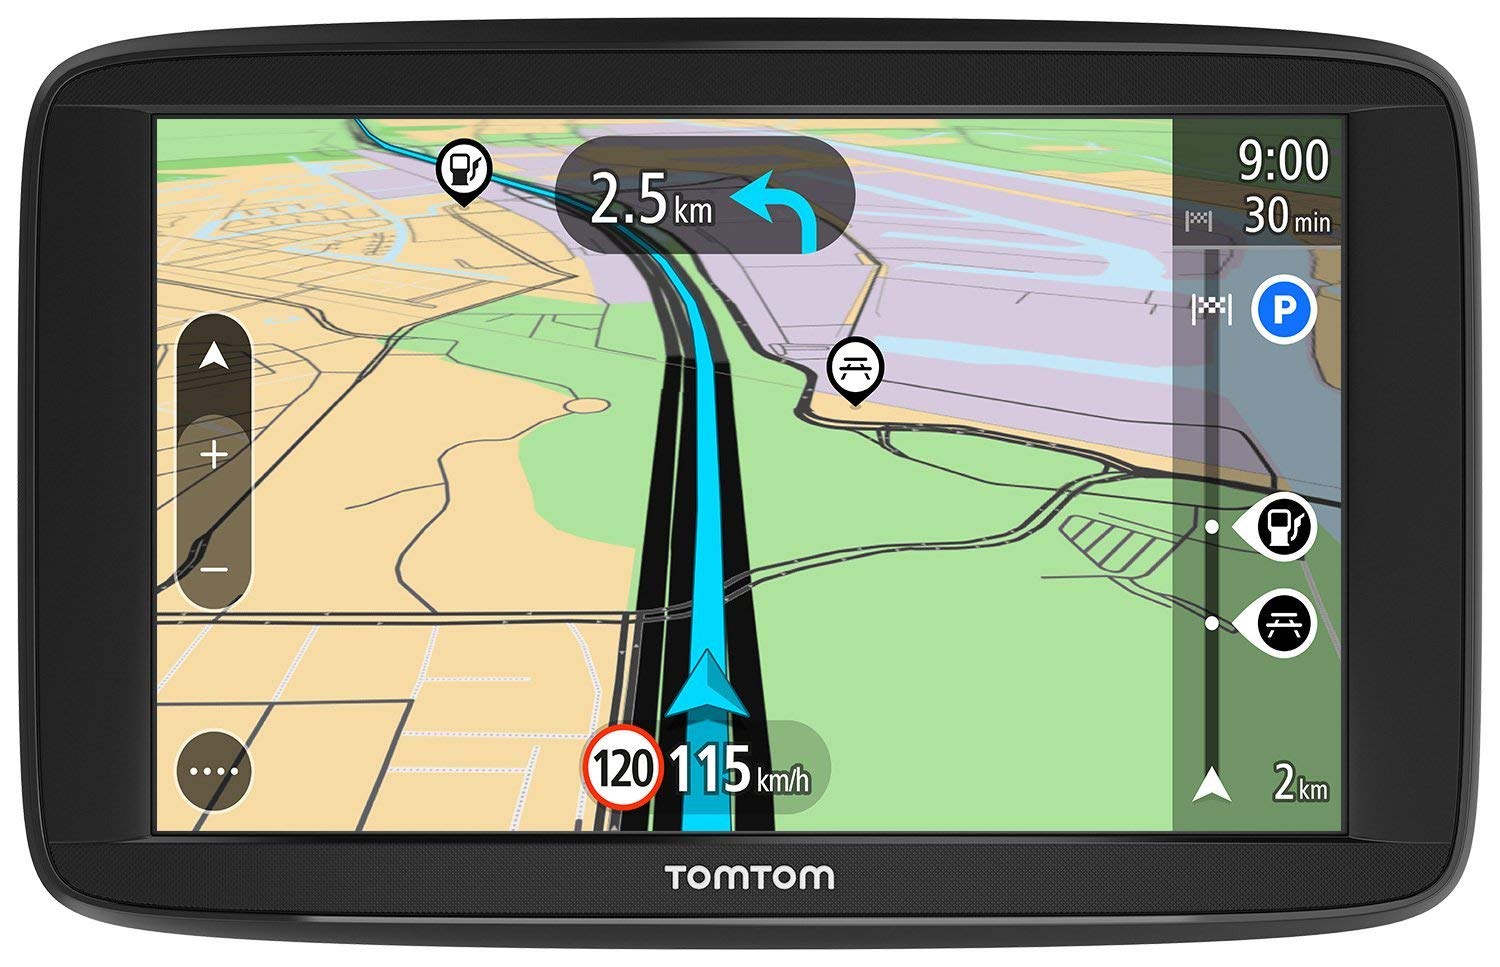 GPS Tomtom Star 63 Reacondicionado